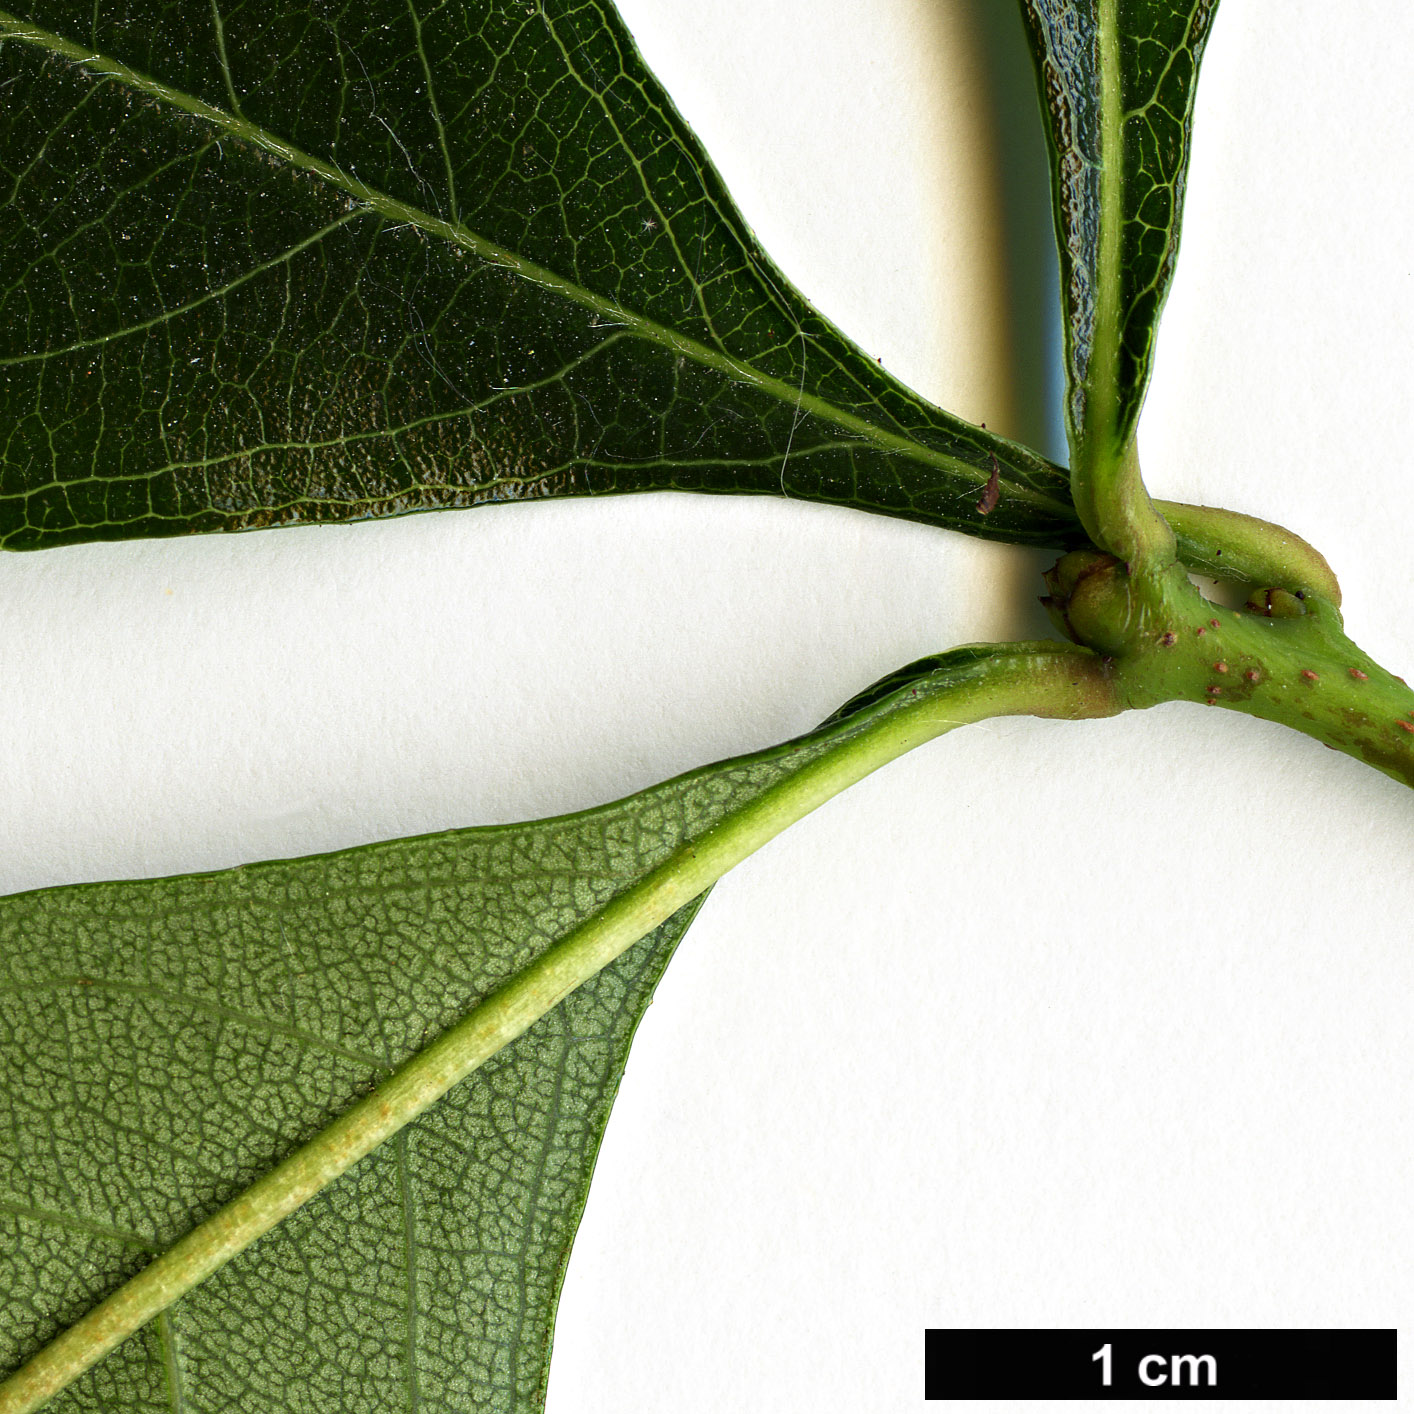 High resolution image: Family: Rosaceae - Genus: Crataegus - Taxon: dodgei